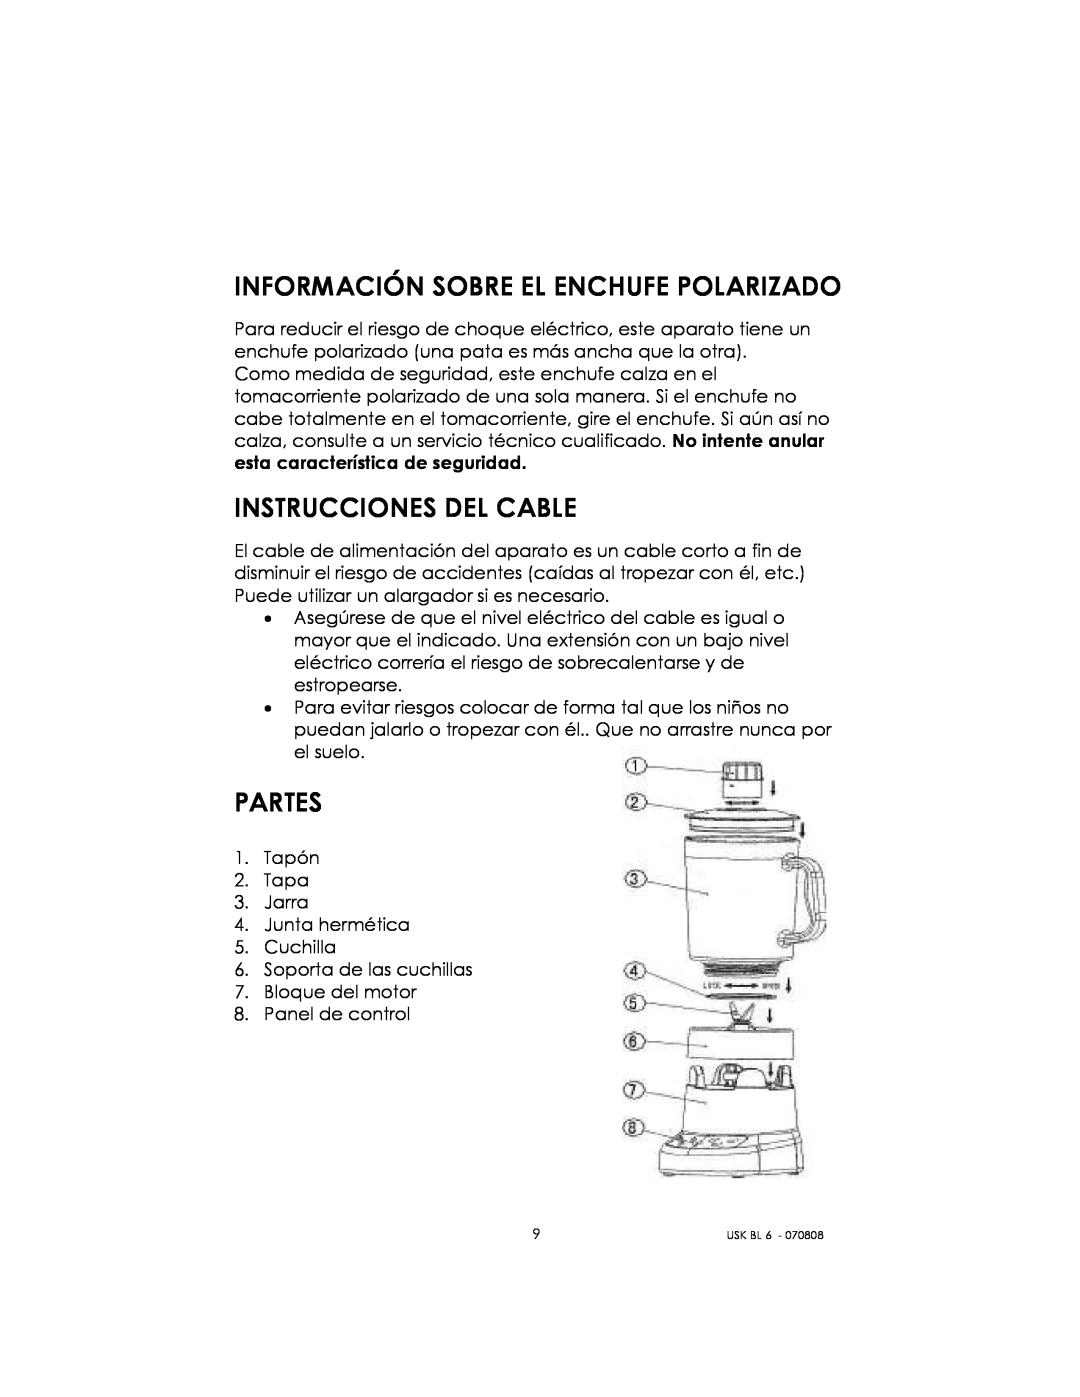 Kalorik USK BL 6 manual Información Sobre El Enchufe Polarizado, Instrucciones Del Cable, Partes 